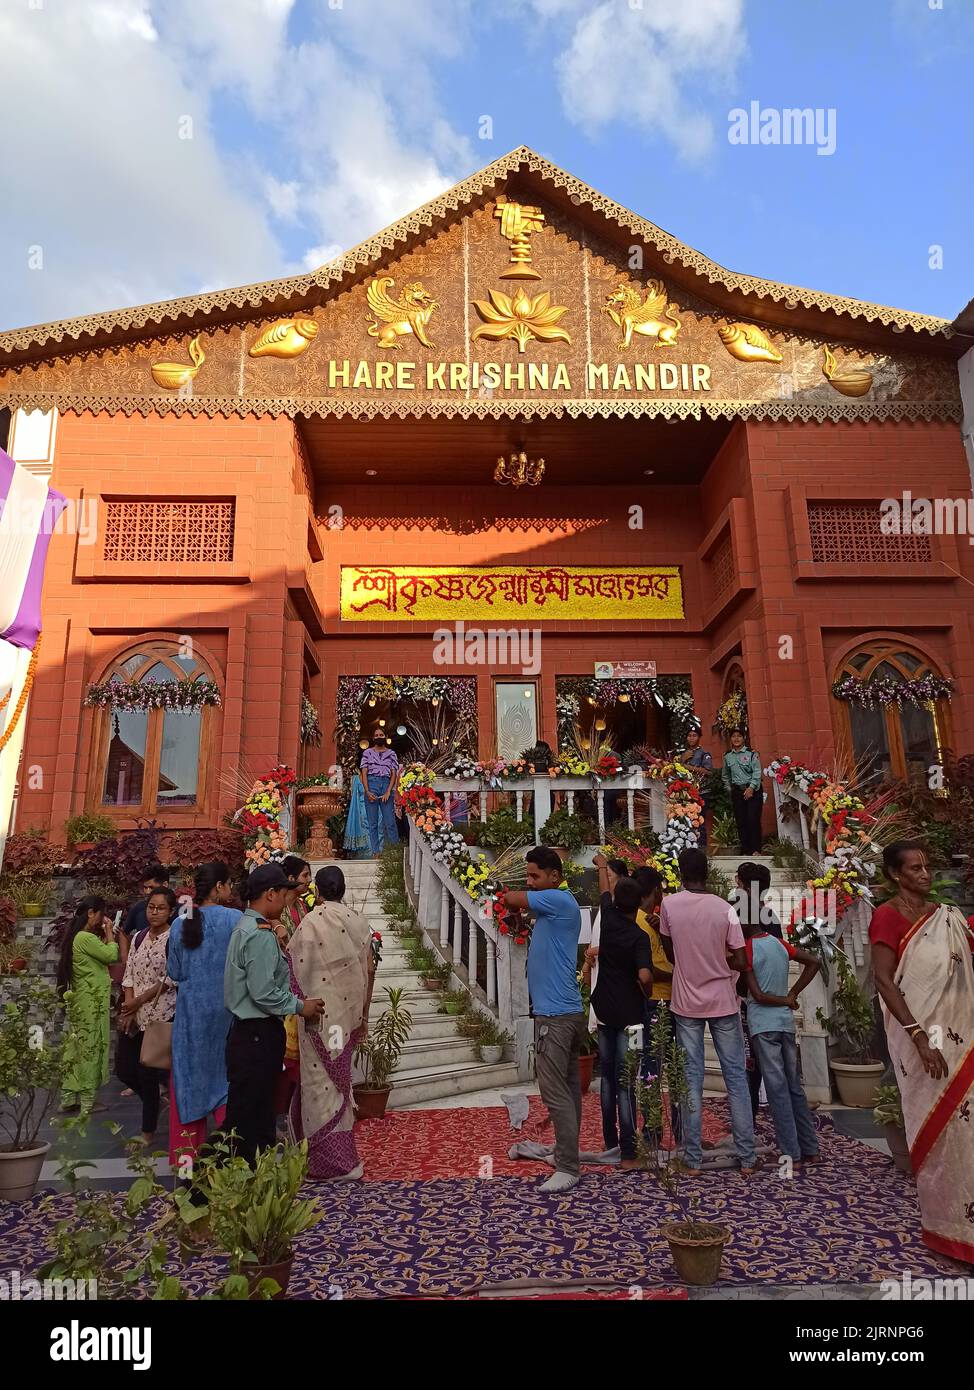 La gente si è riunita a Hare Krishna Mandir durante Krishna Janmashtami, un festival indù annuale che celebra la nascita di Krishna Foto Stock